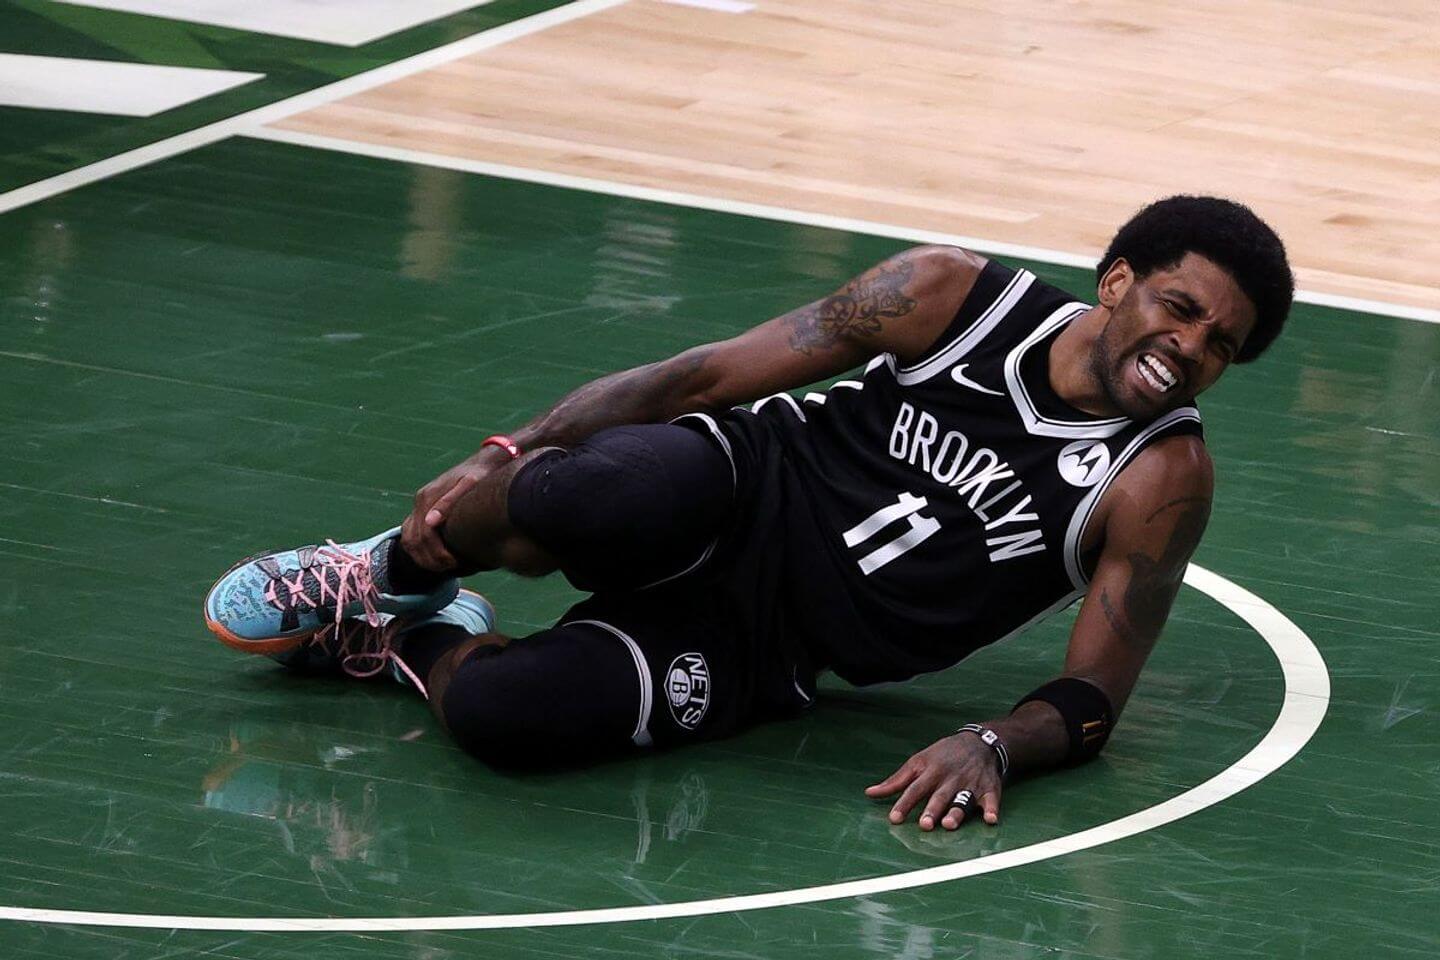 Thêm một ngôi sao chấn thương, đã đến lúc Brooklyn Nets lo lắng - Ảnh 1